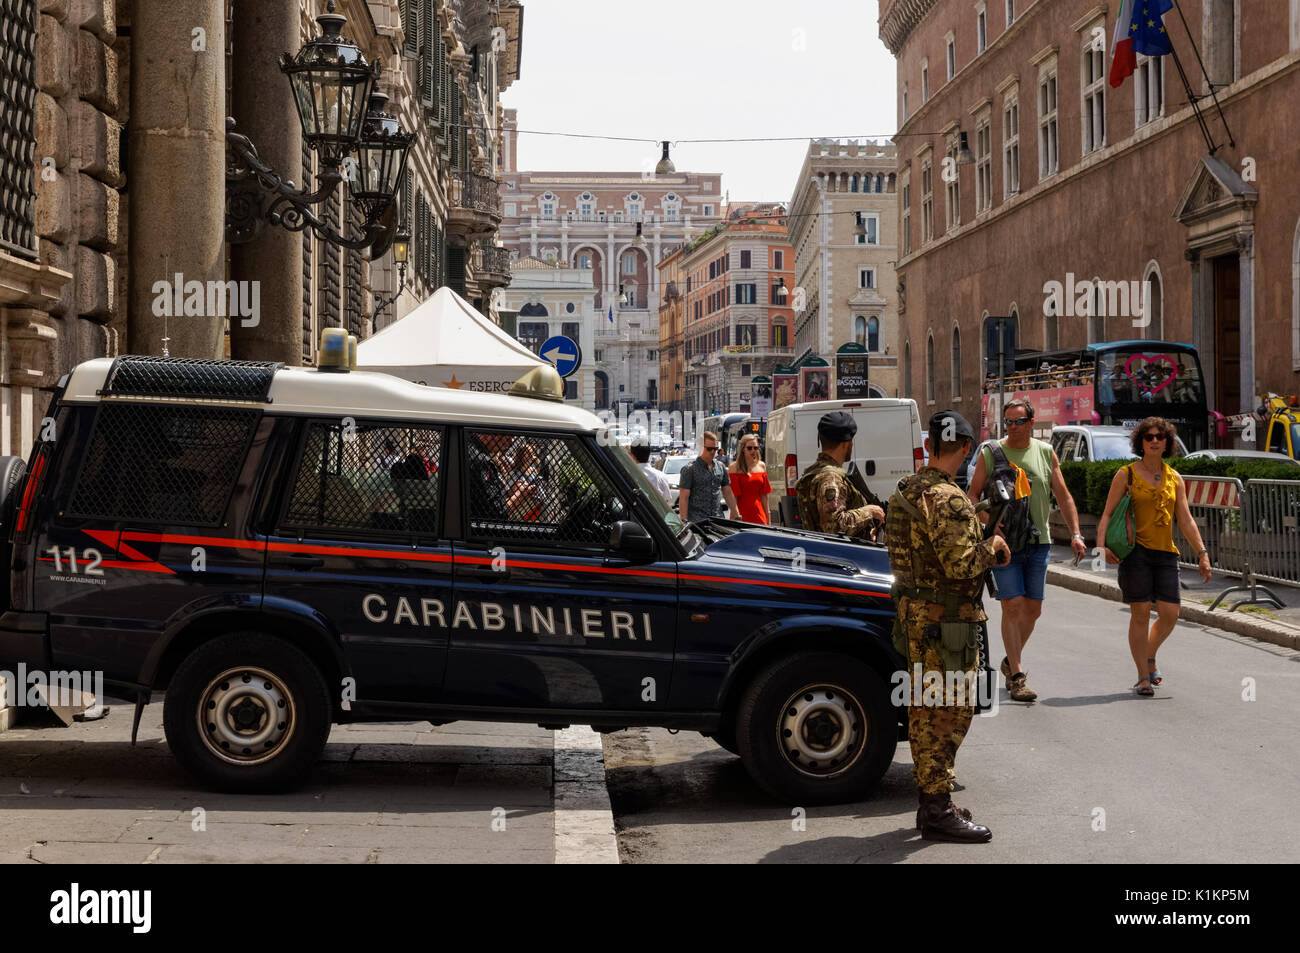 Carabinieri patrol on the Via del Plebiscito in Rome, Italy Stock Photo